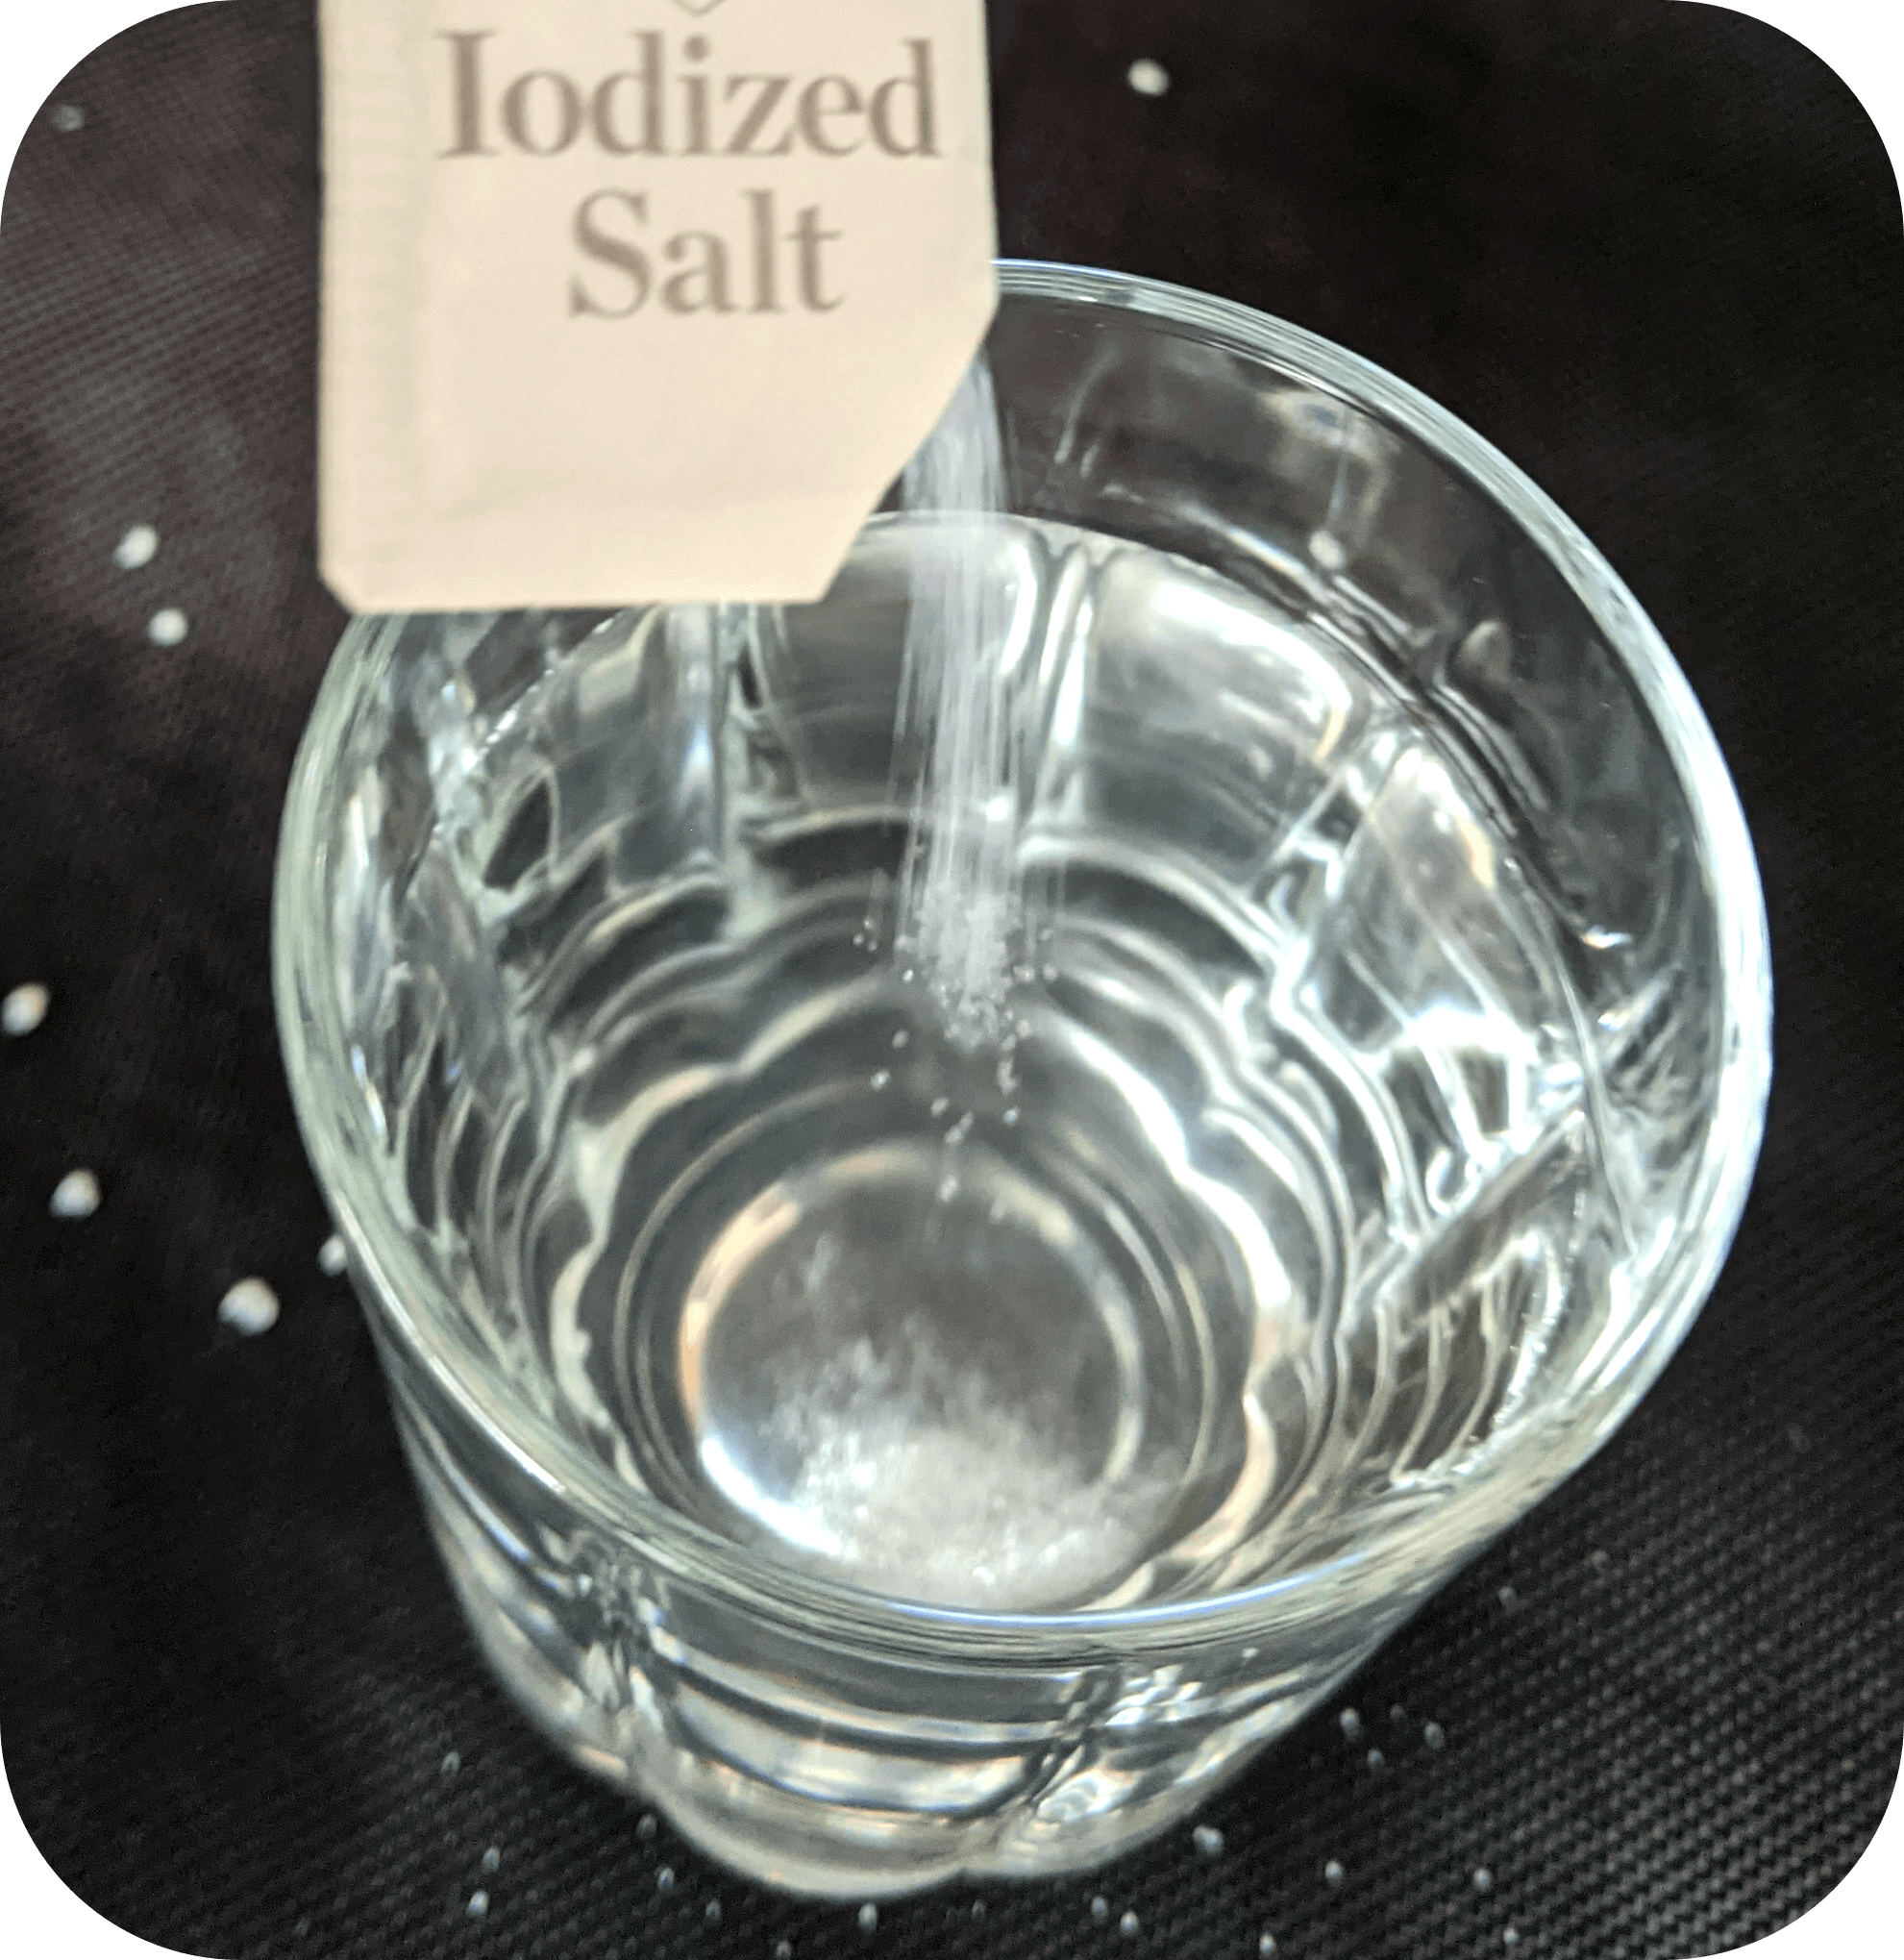 Sal yodada mezclada con agua en una taza de vidrio.